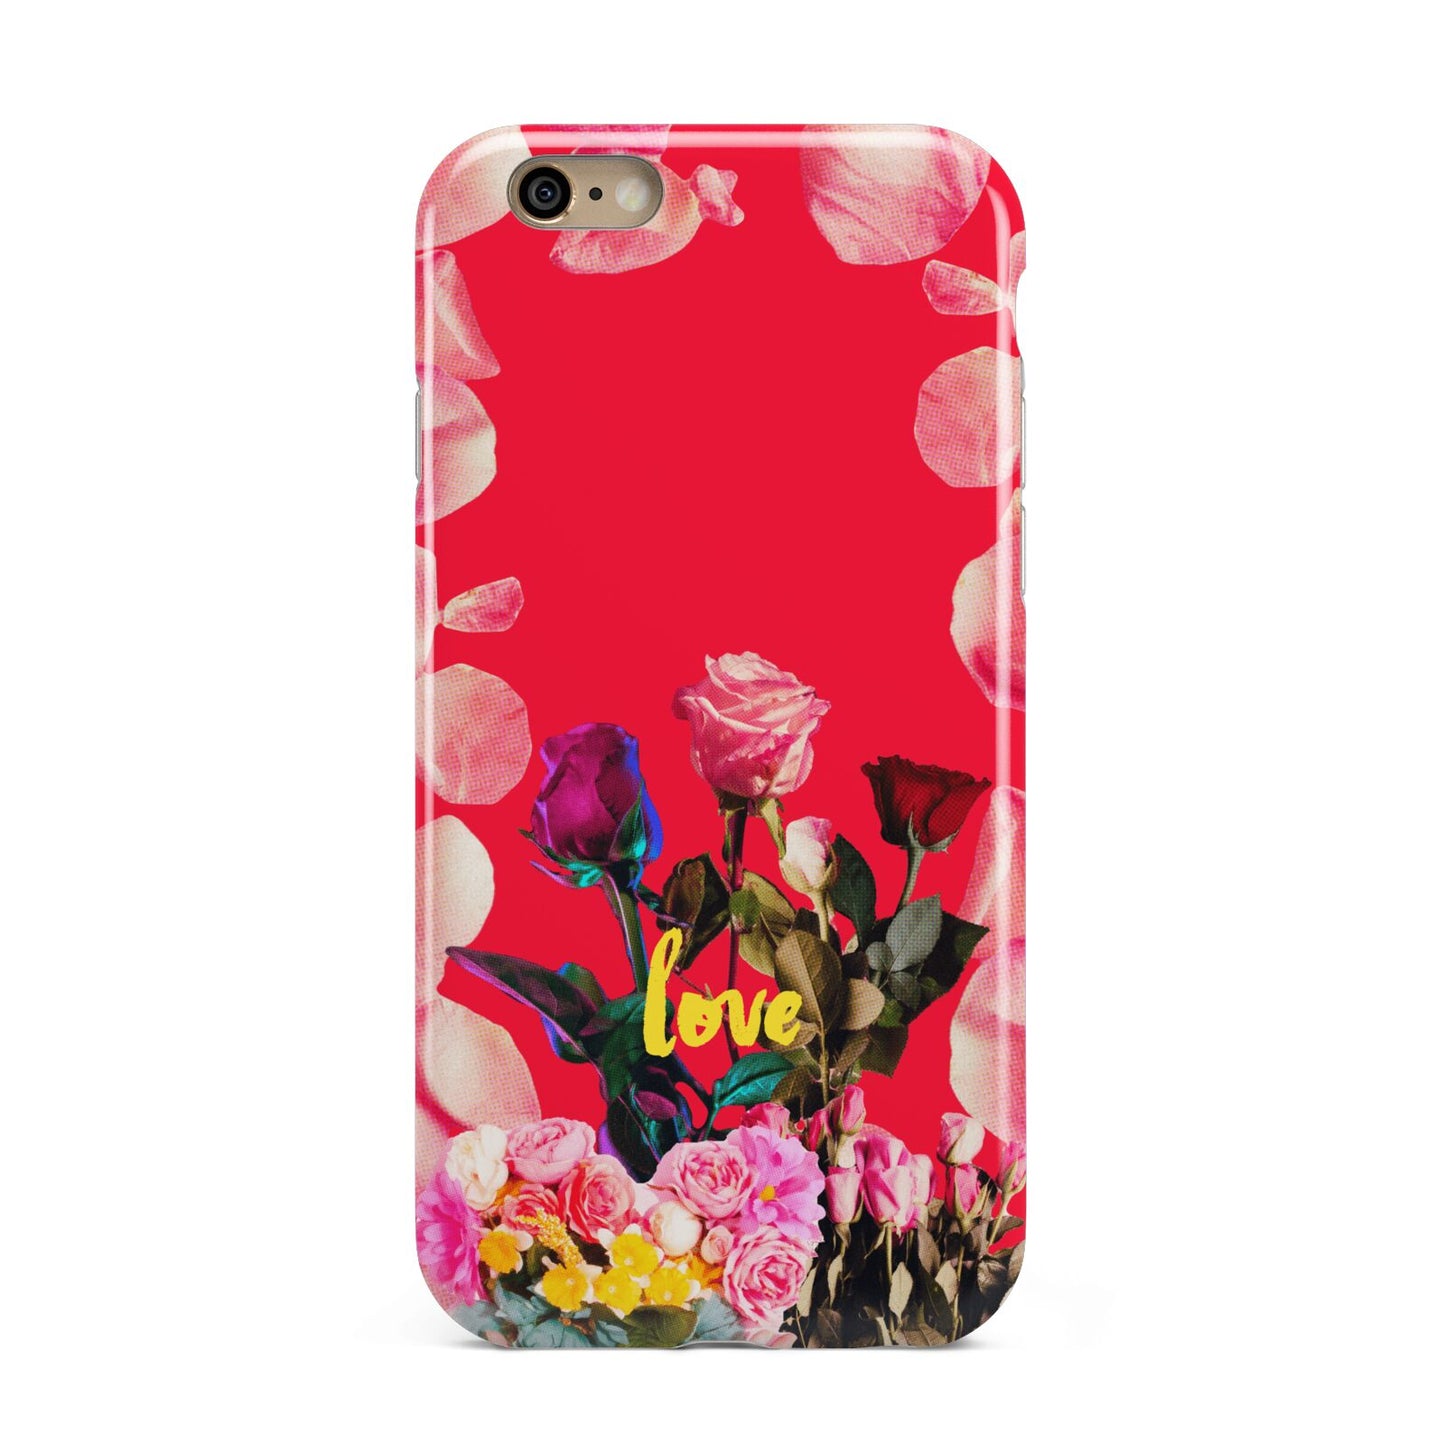 Retro Floral Valentine Apple iPhone 6 3D Tough Case